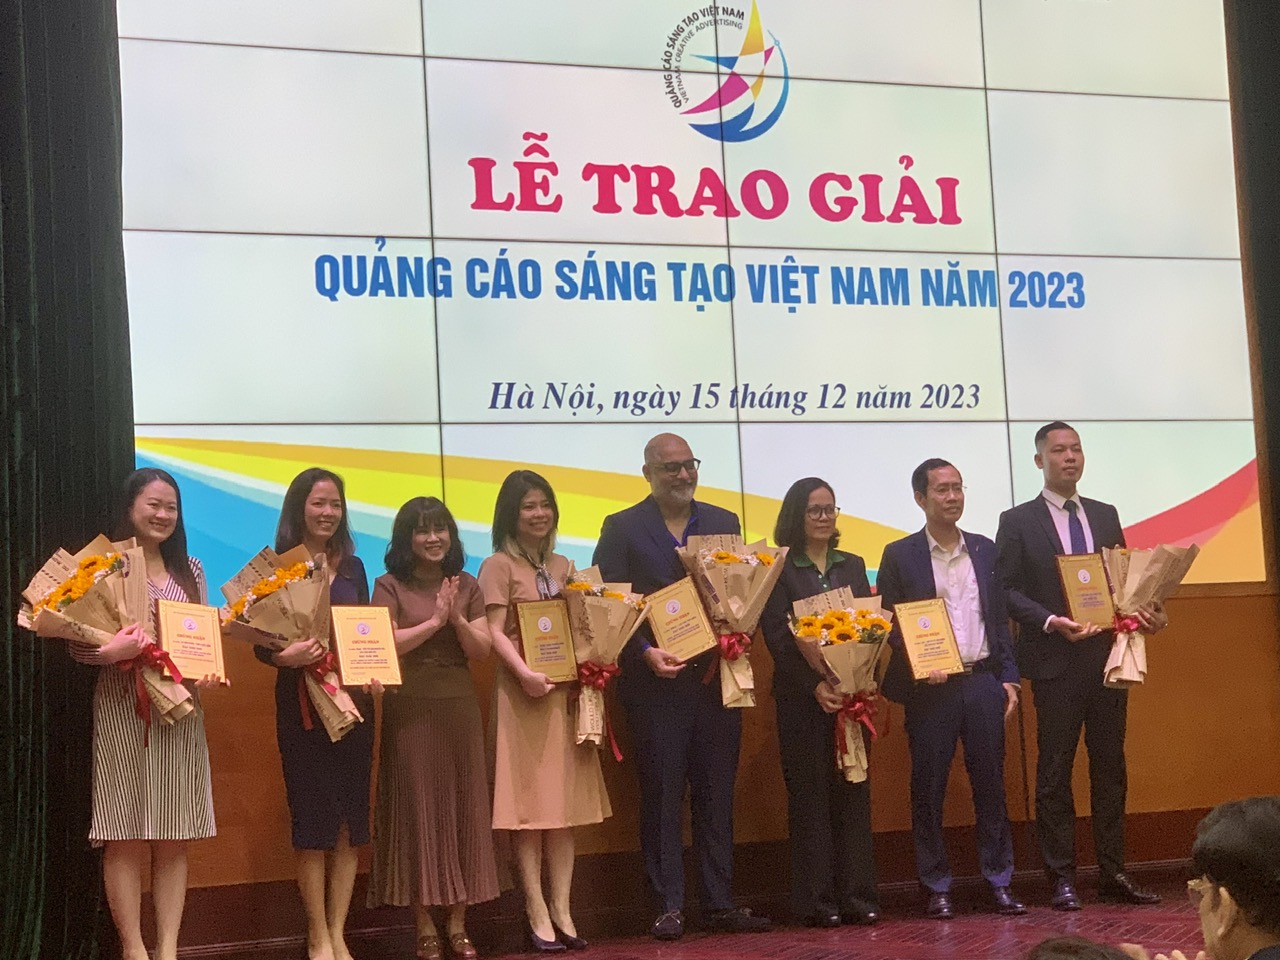 Ban Tổ chức trao giải cho các tác phẩm đạt Giải thưởng “Quảng cáo sáng tạo Việt Nam năm 2023”